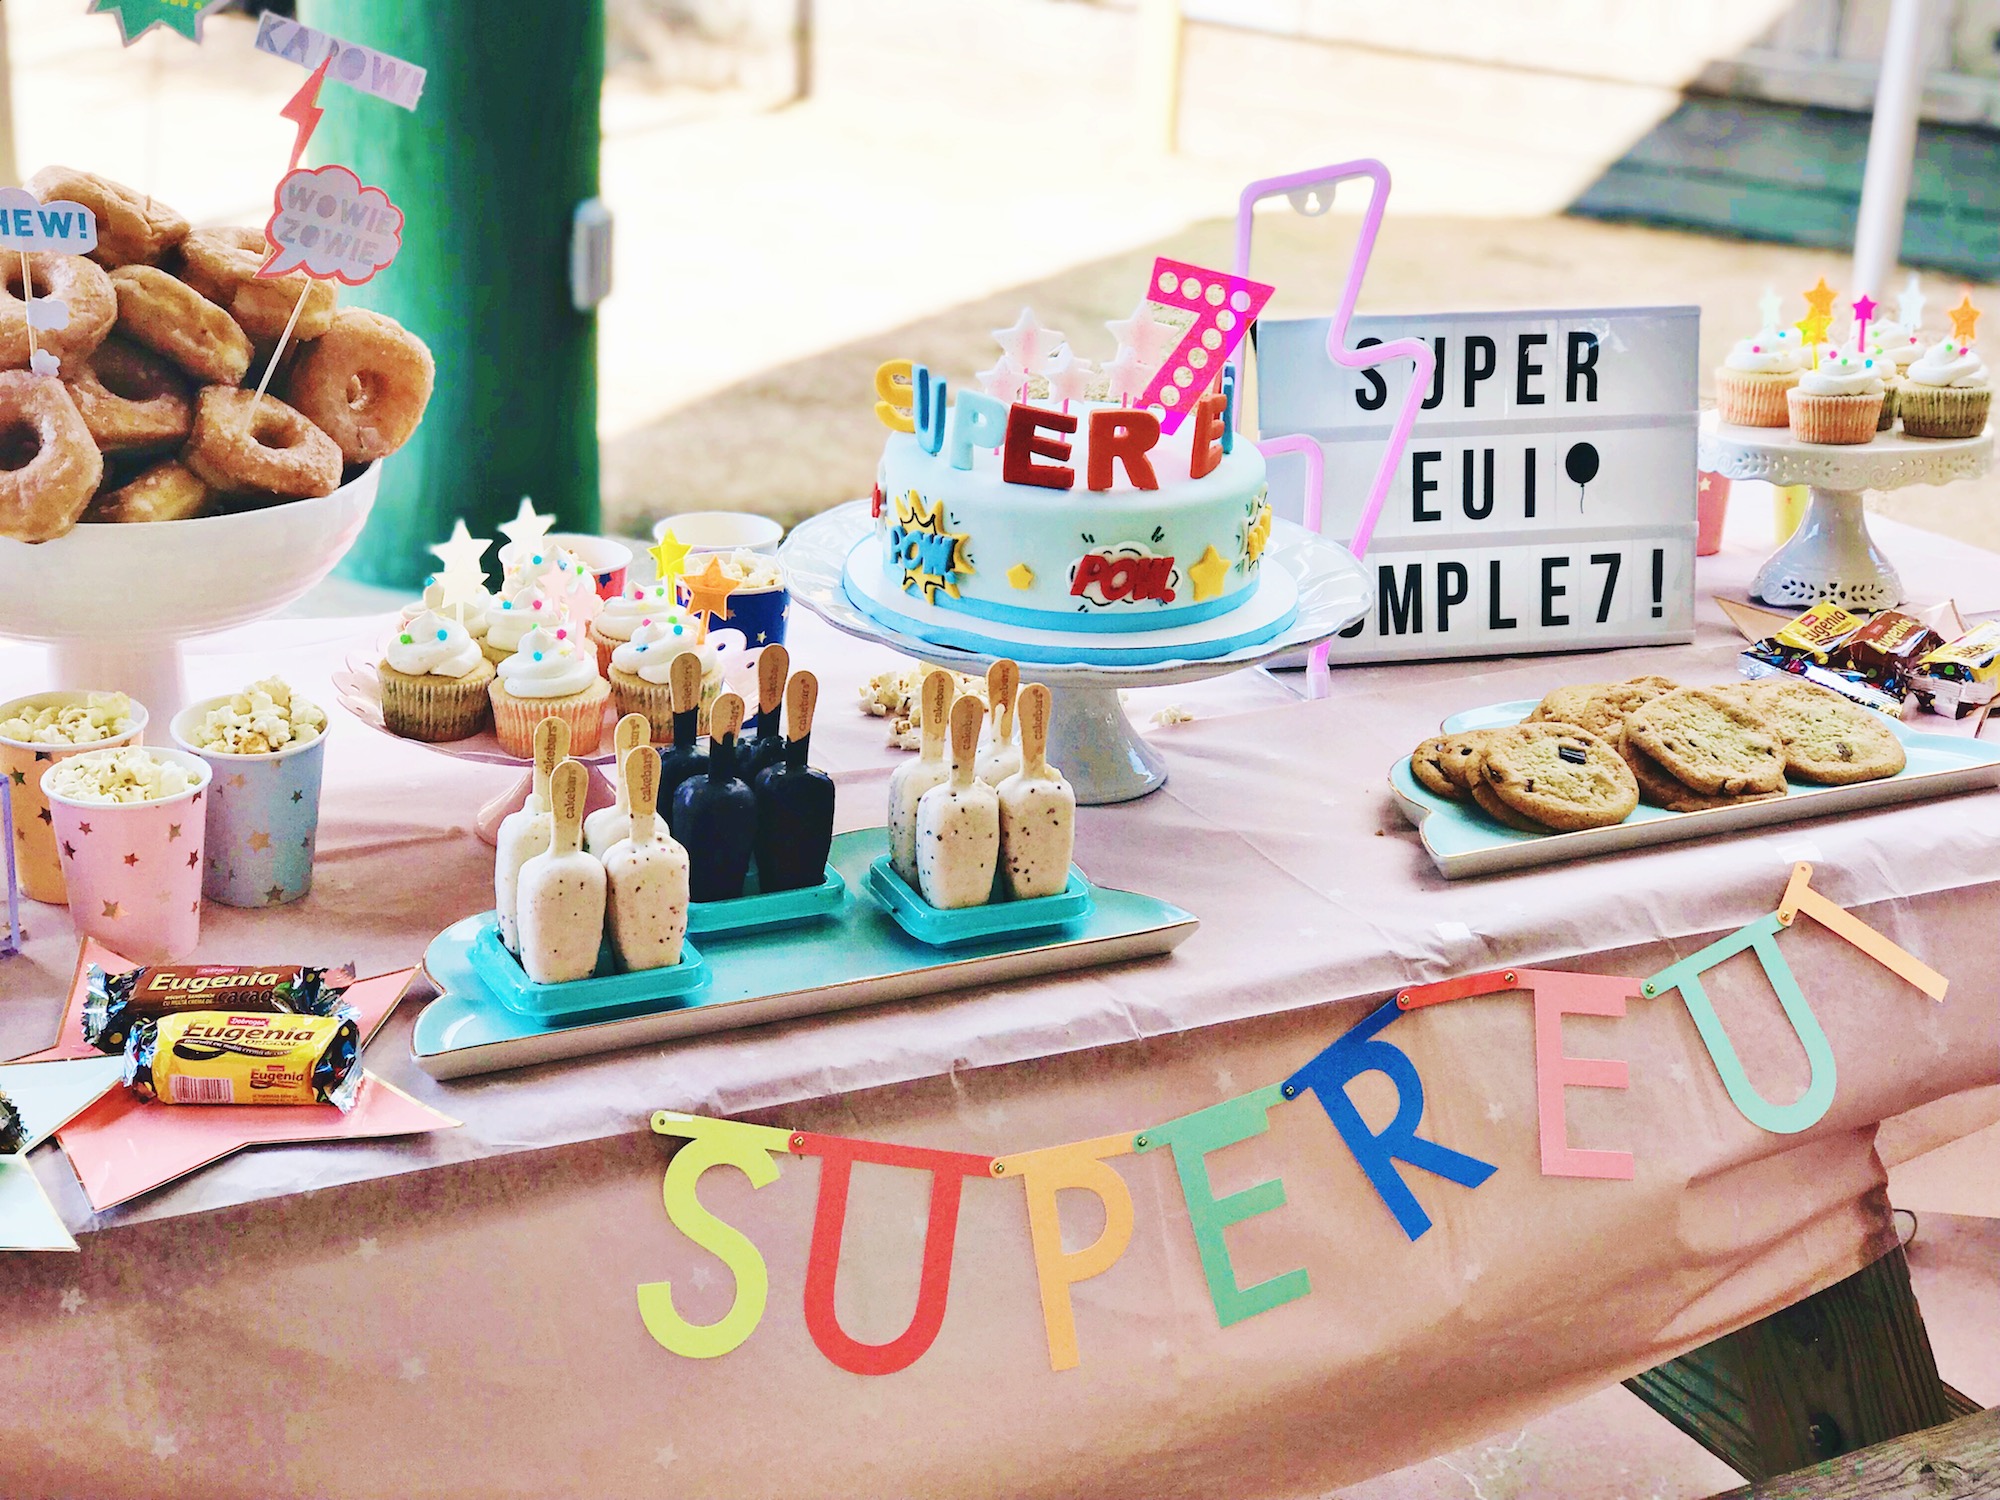 SuperEui cumple 7 | Fiesta Supergirls